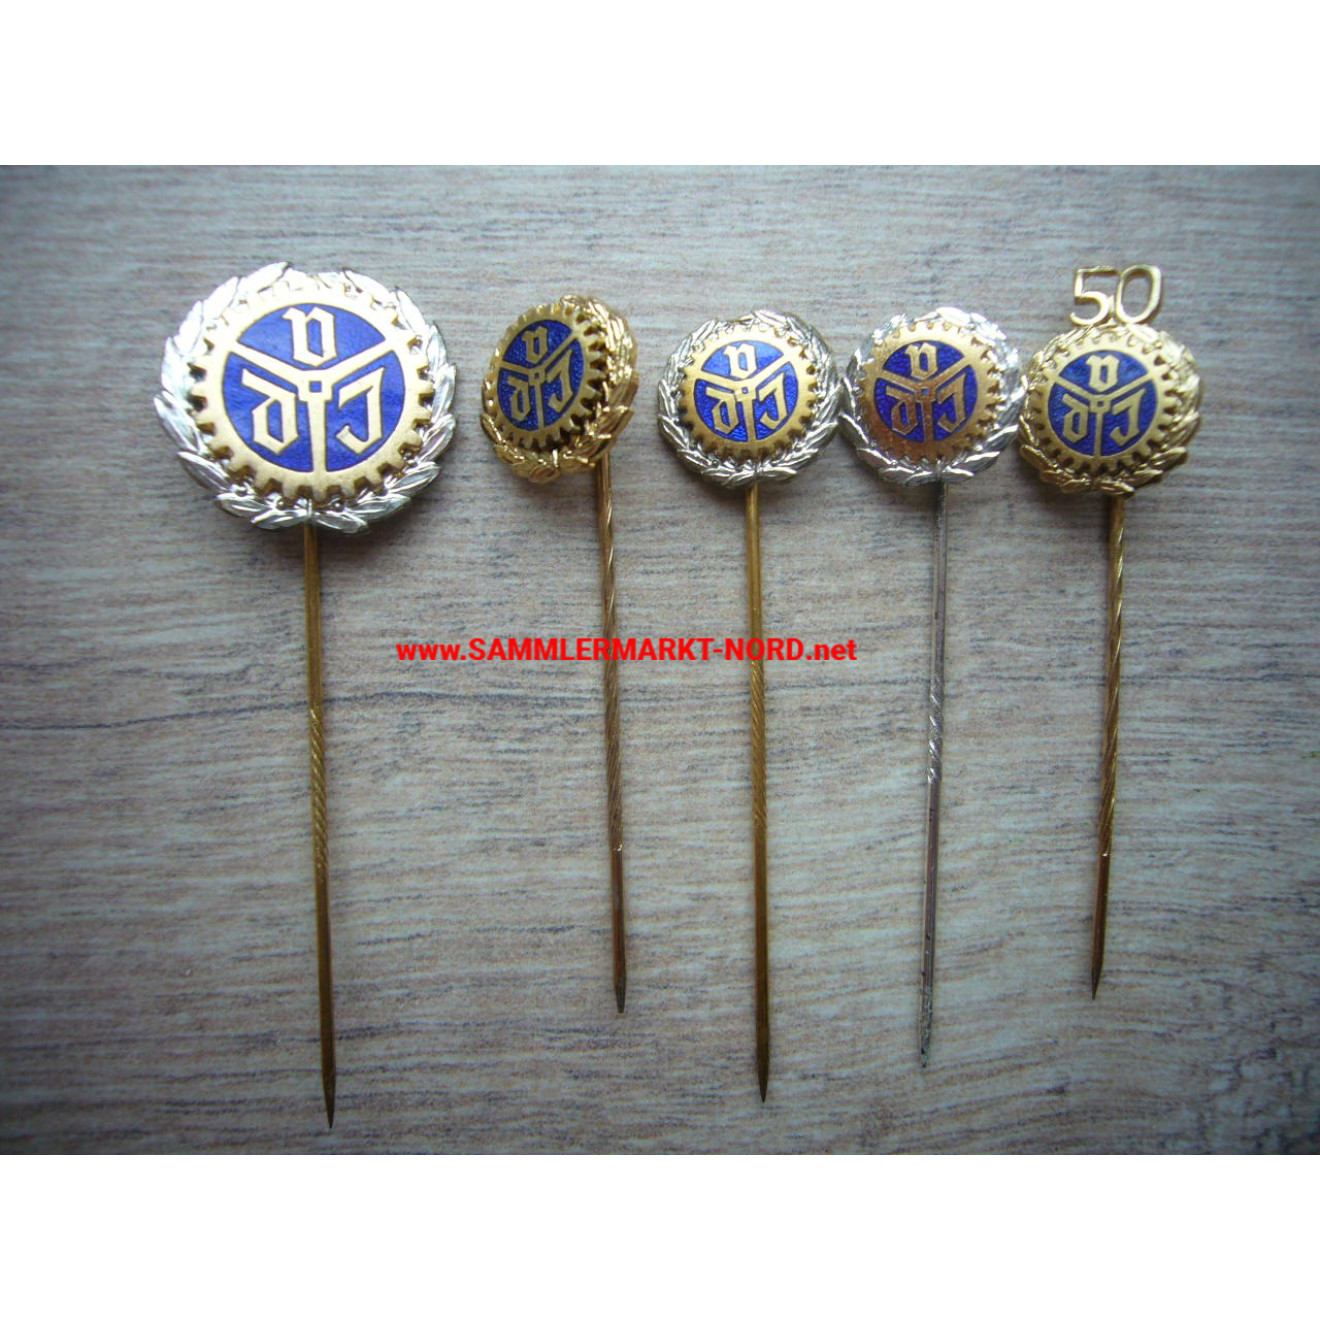 VDI Association of German Engineers - various honorary pins